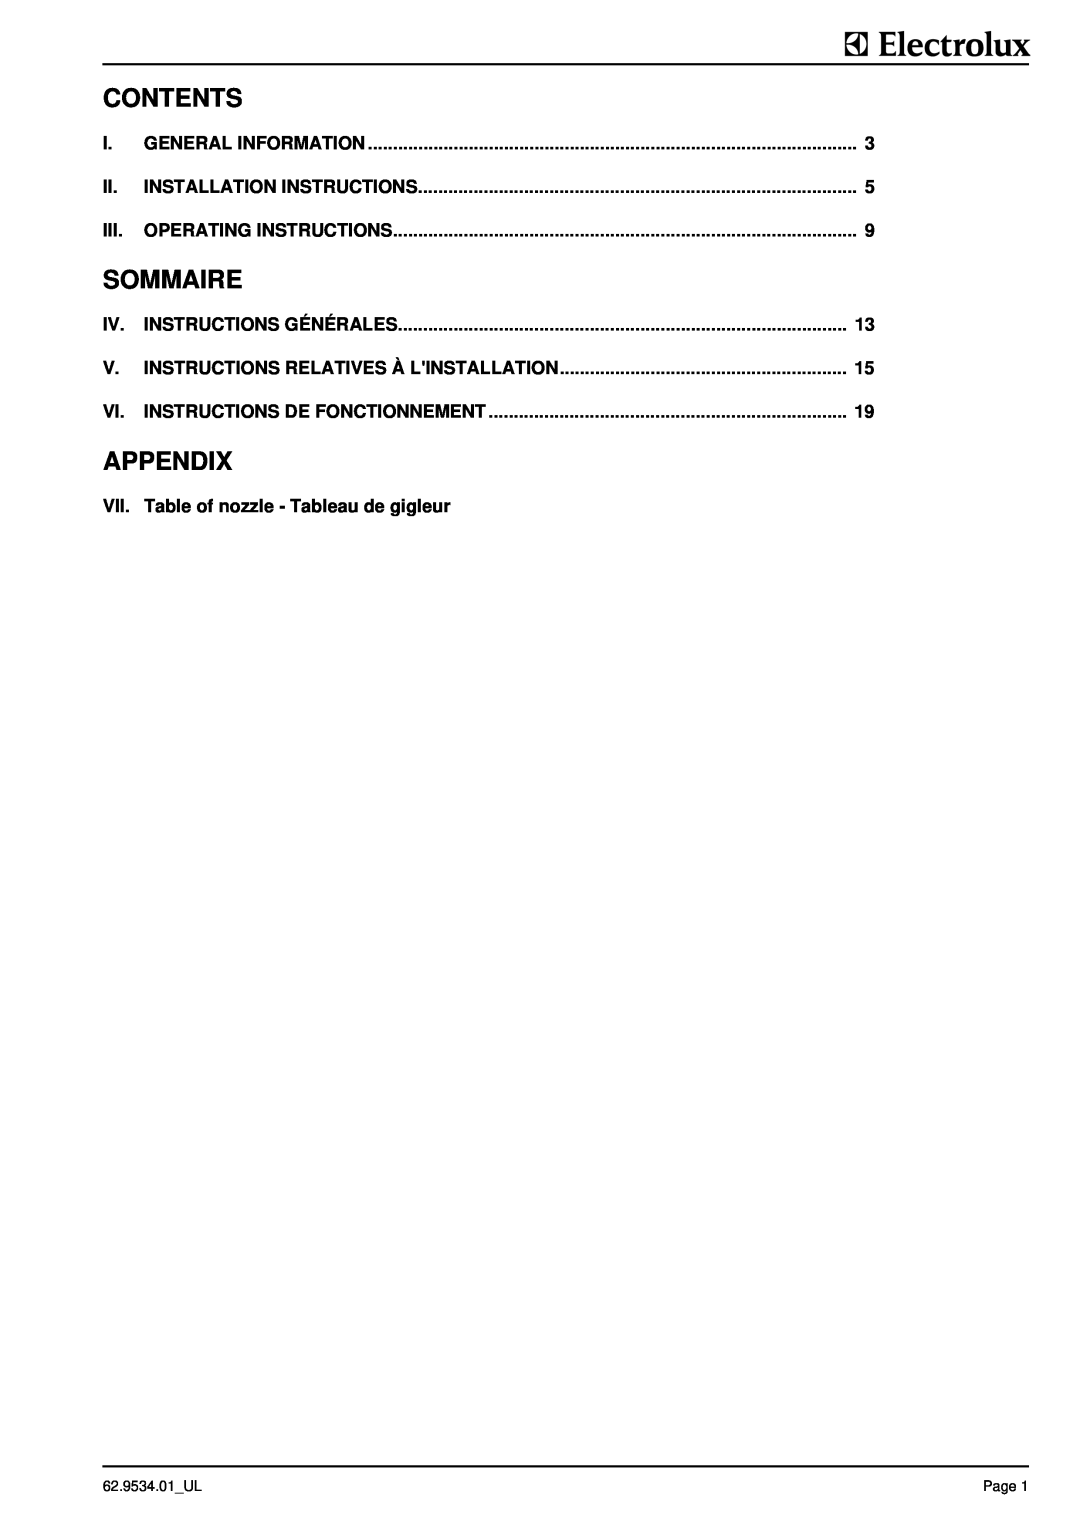 Electrolux WLGWAFOOOO, WLGWAAOOOO, WLGWDAOOOO manual Contents, Sommaire, Appendix, VII. Table of nozzle - Tableau de gigleur 